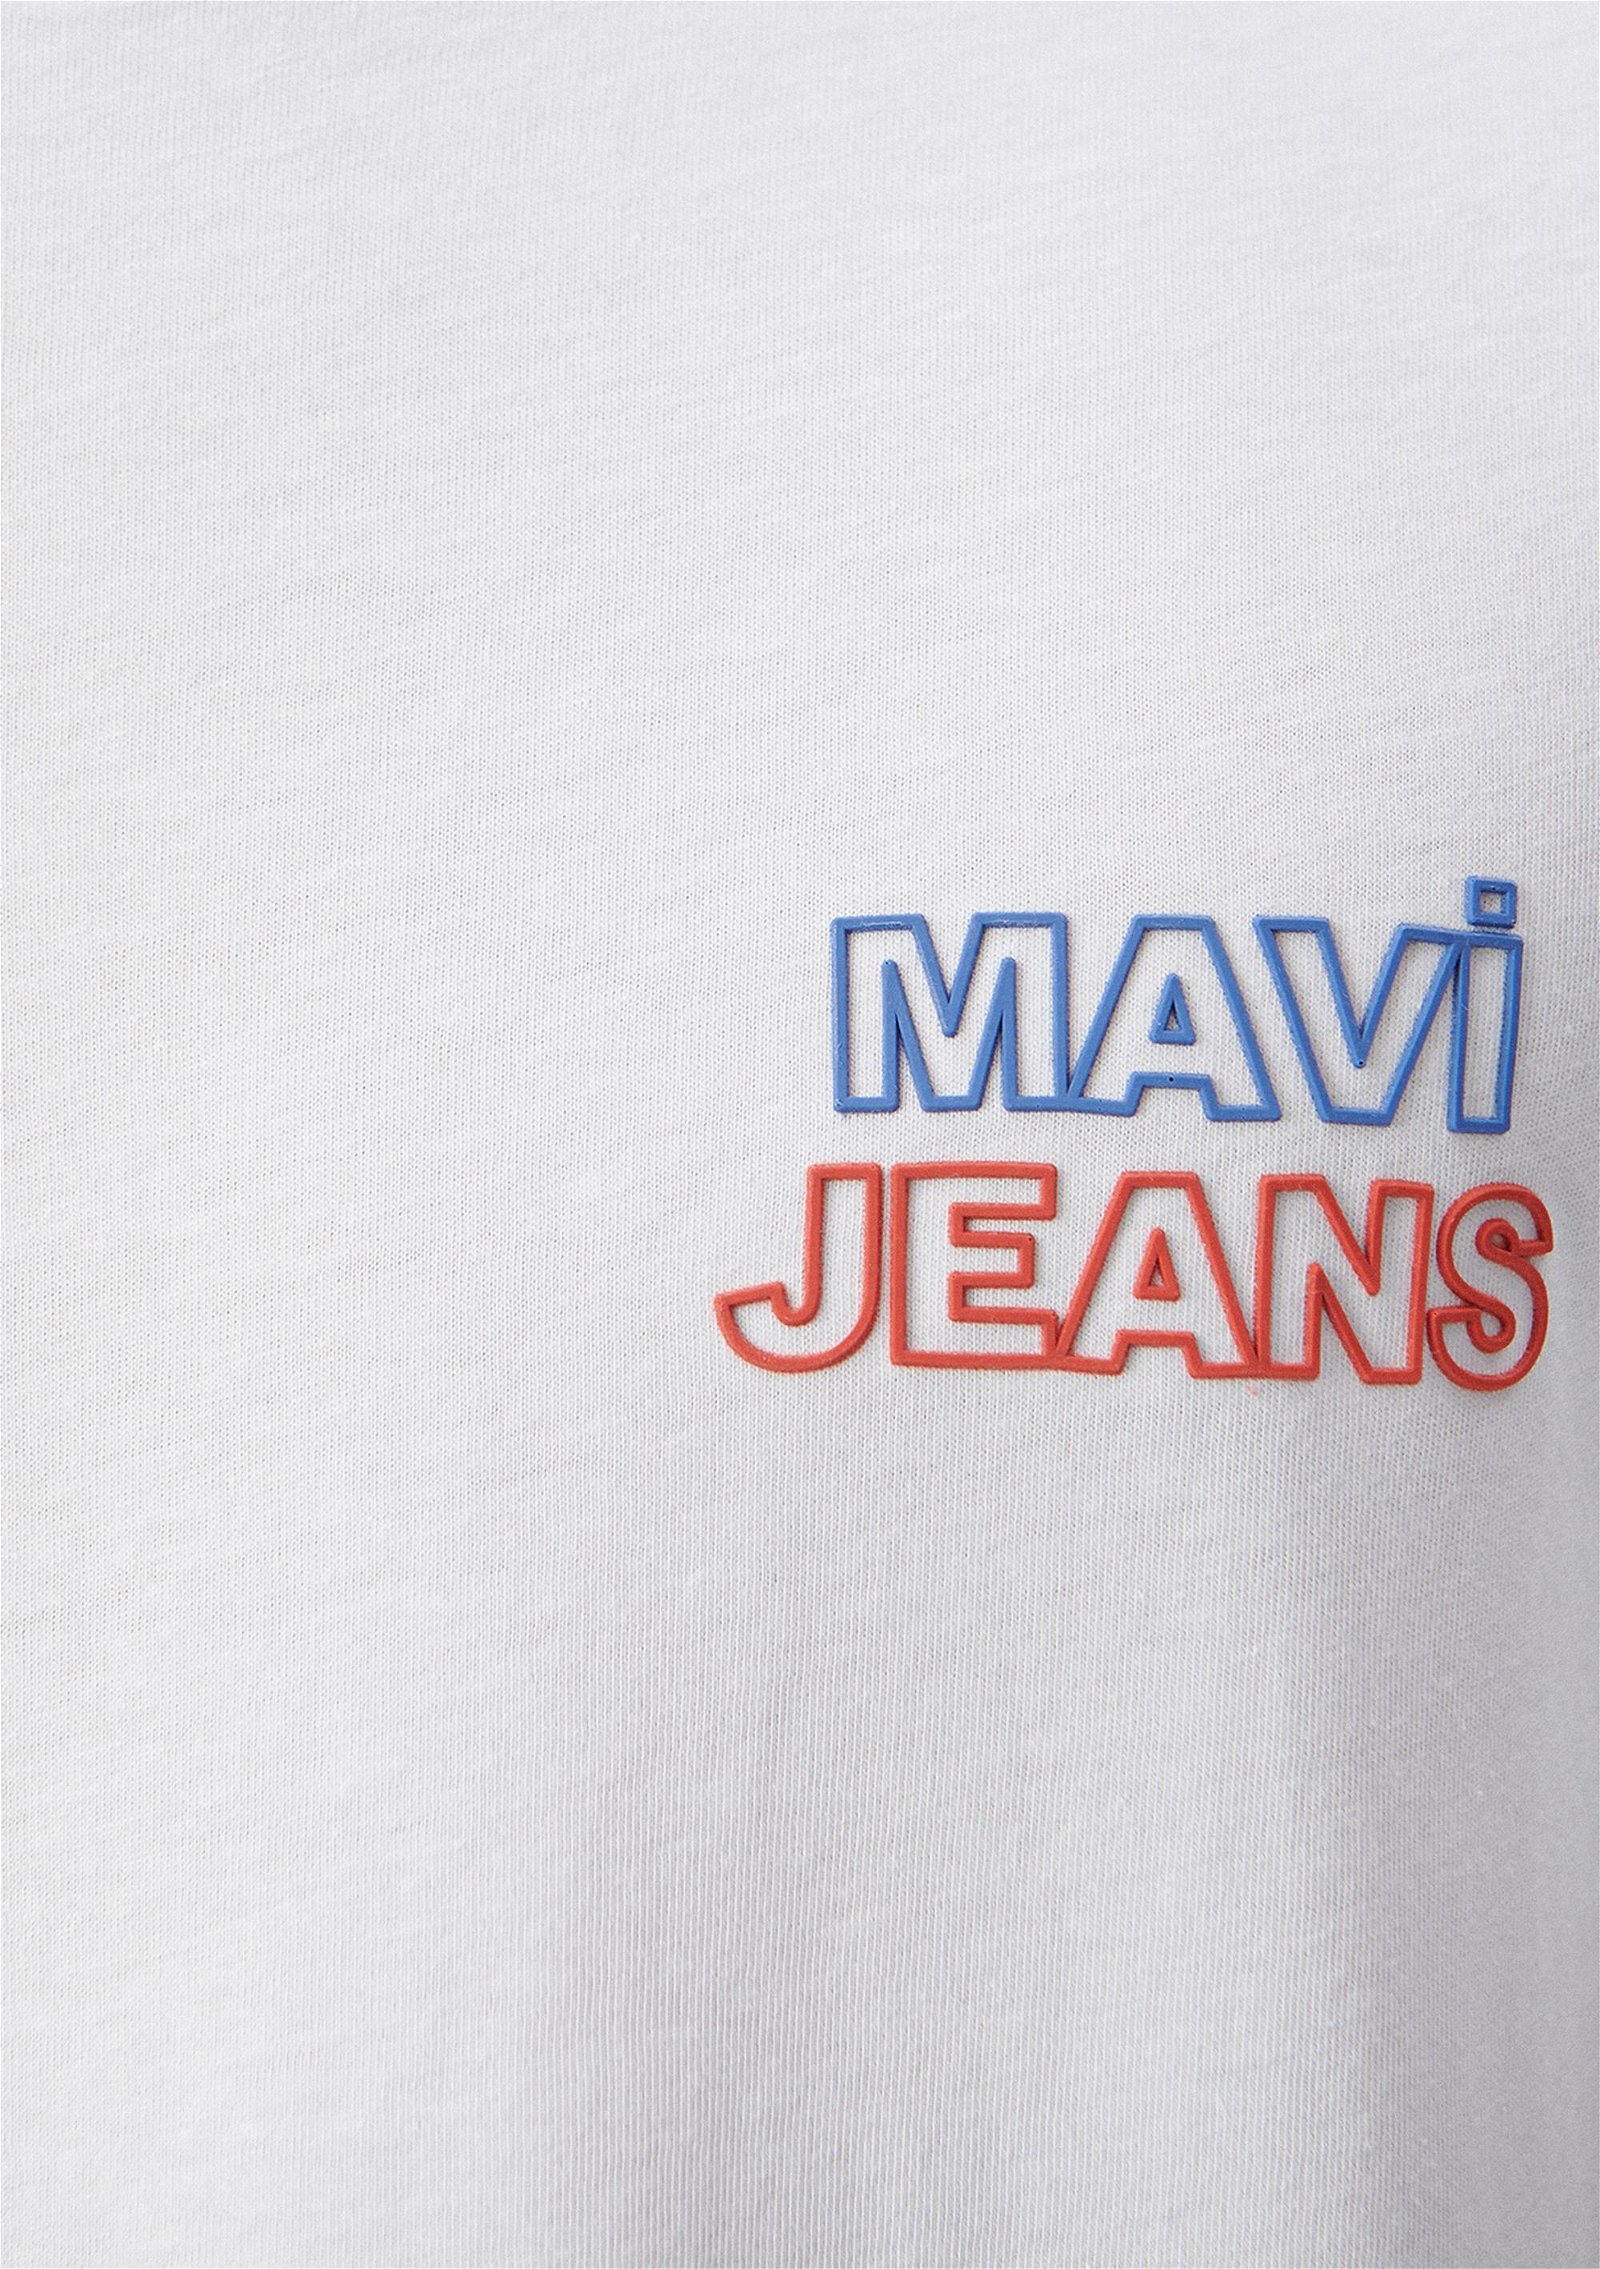 Mavi Mavi Jeans Baskılı Beyaz Tişört Slim Fit / Dar Kesim 066841-620